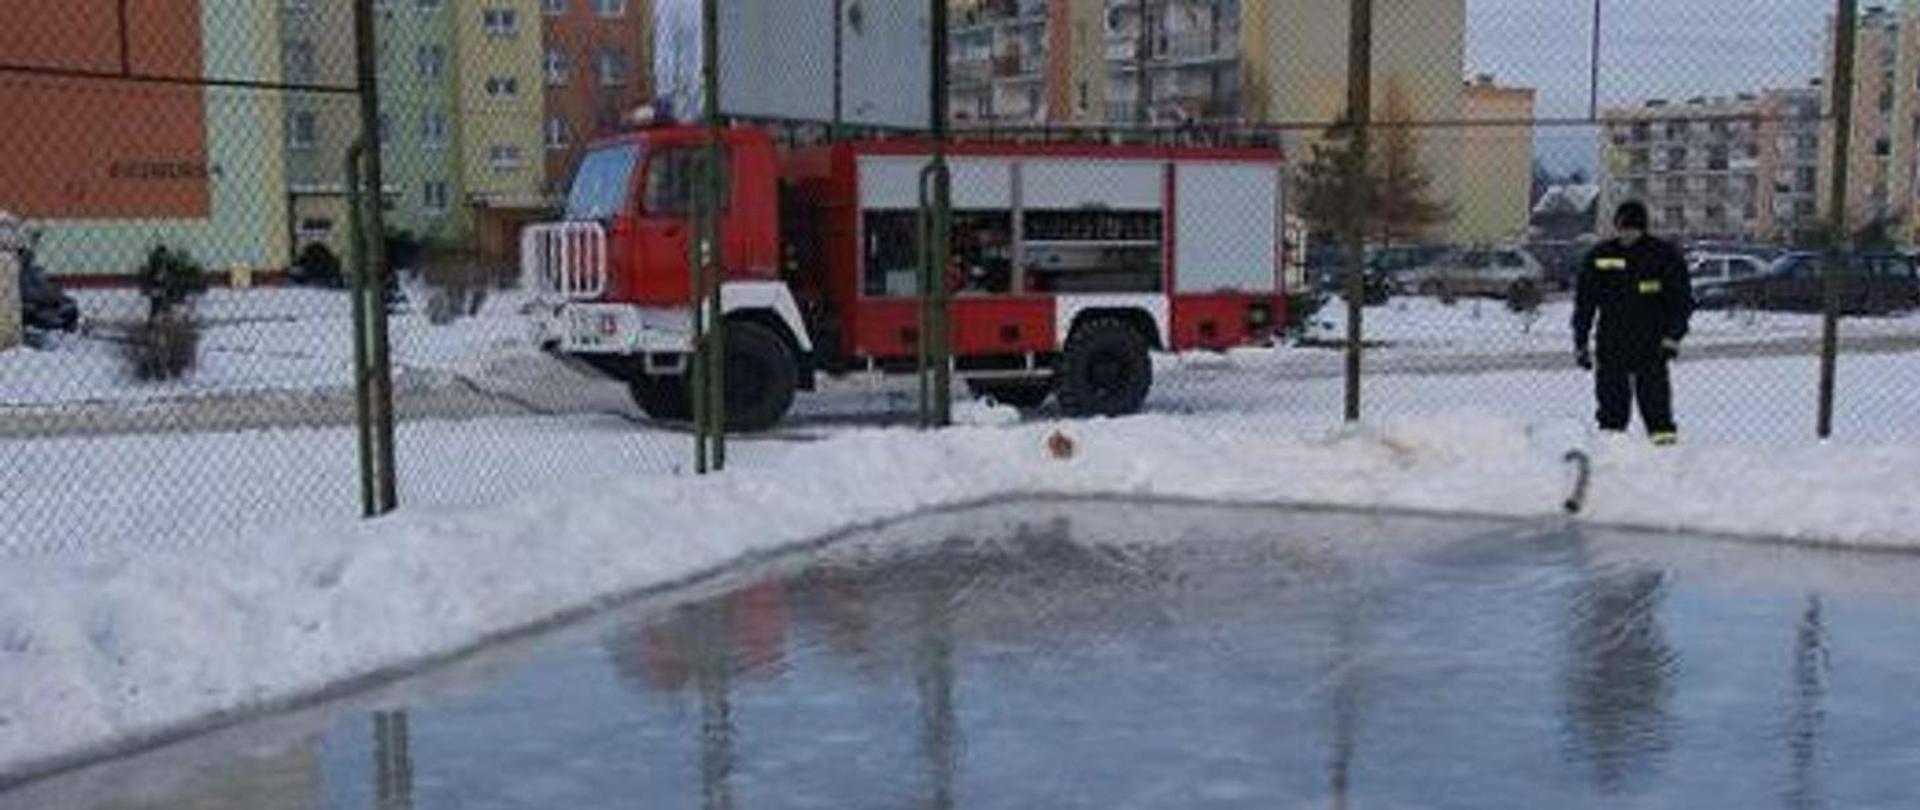 Zdjęcie ukazuje strażaków wylewających lodowisko